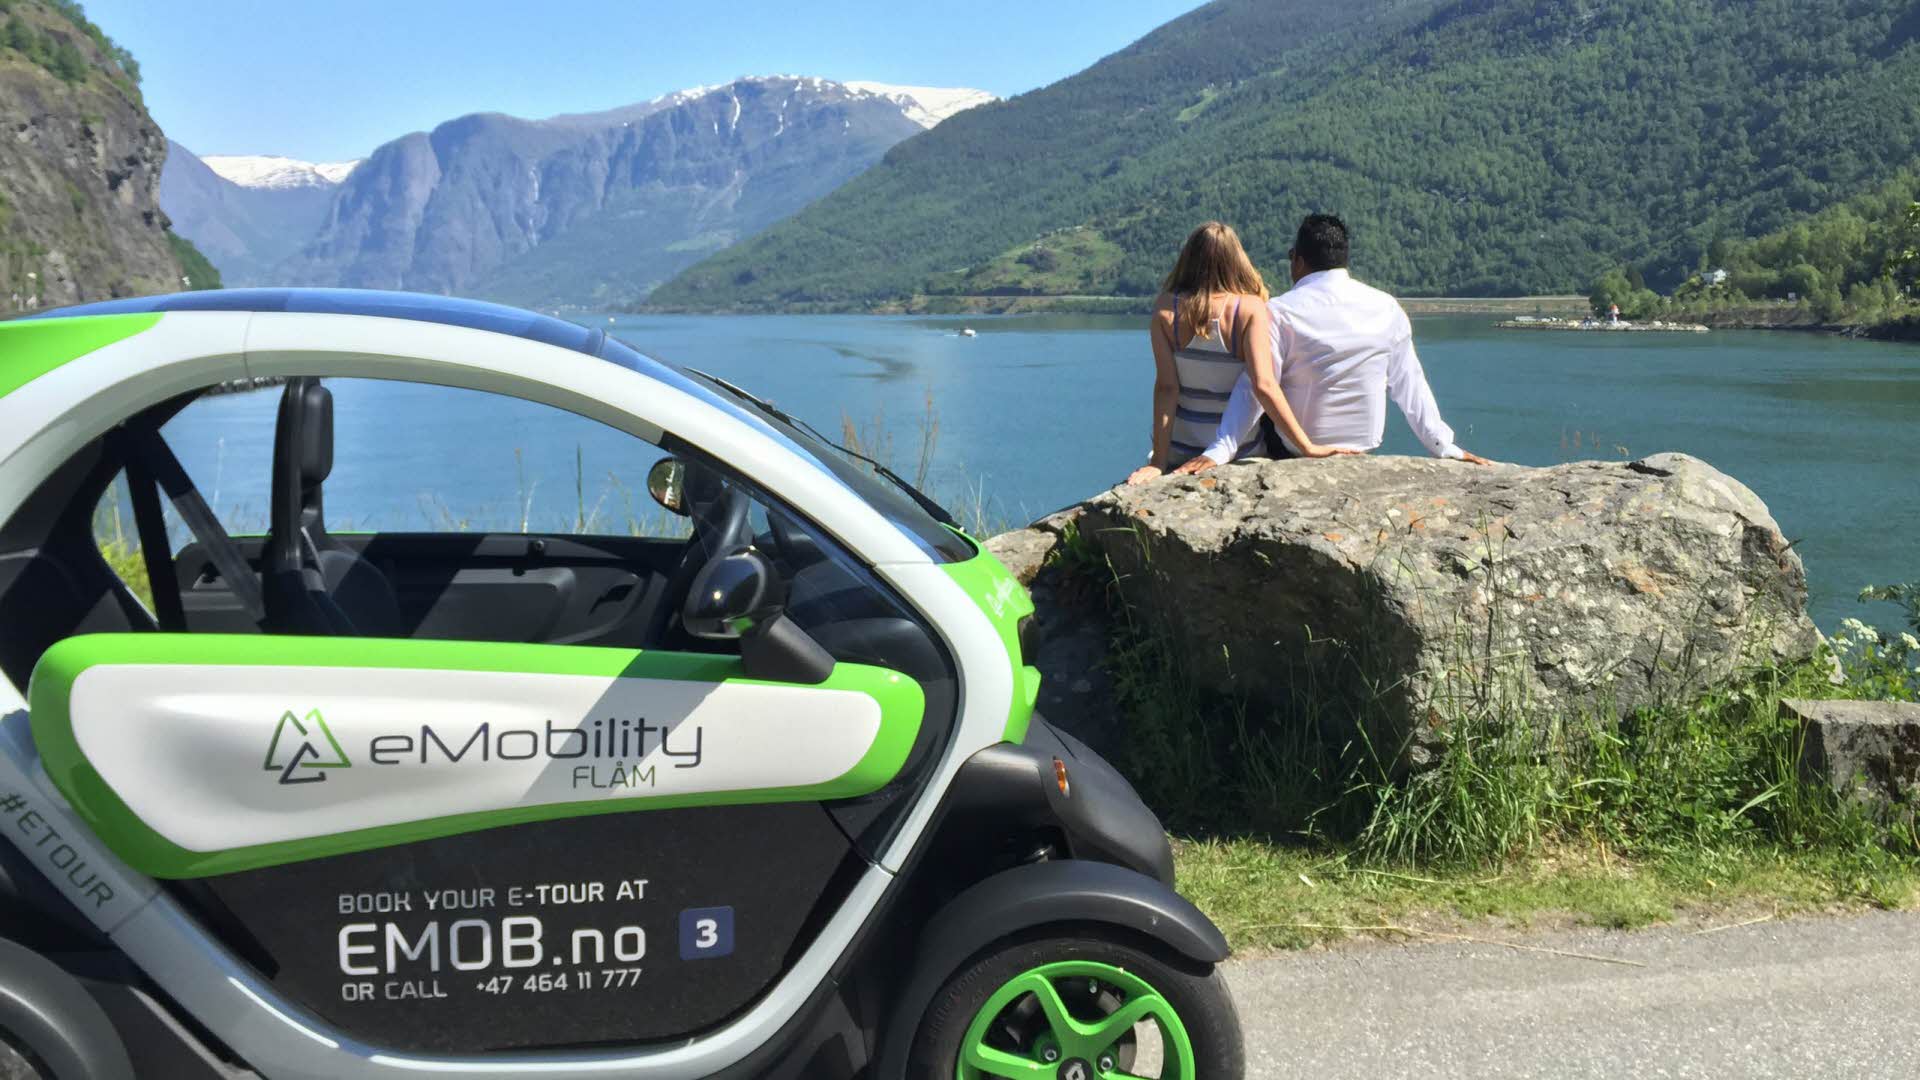 Una pareja sentada en una roca junto al mar mirando al fiordo y a la montaña, con un coche eléctrico al fondo